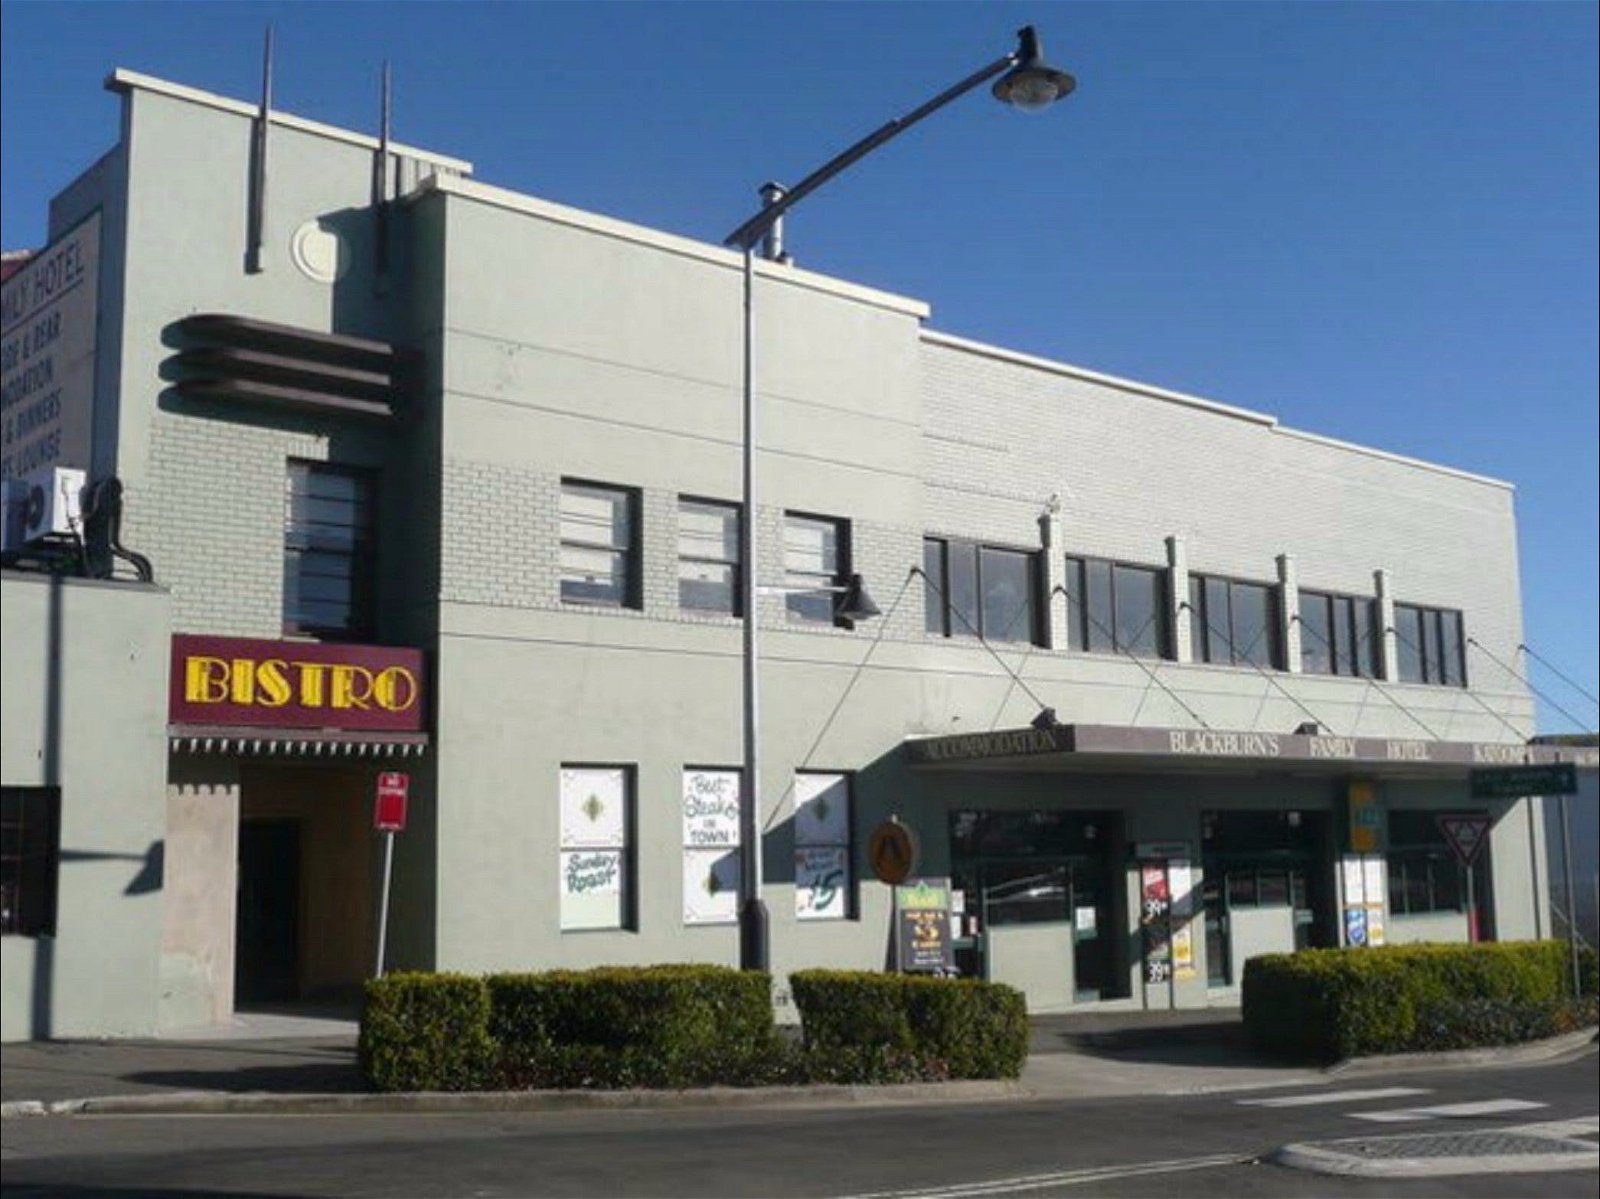 Katoomba Family Hotel and Restaurant